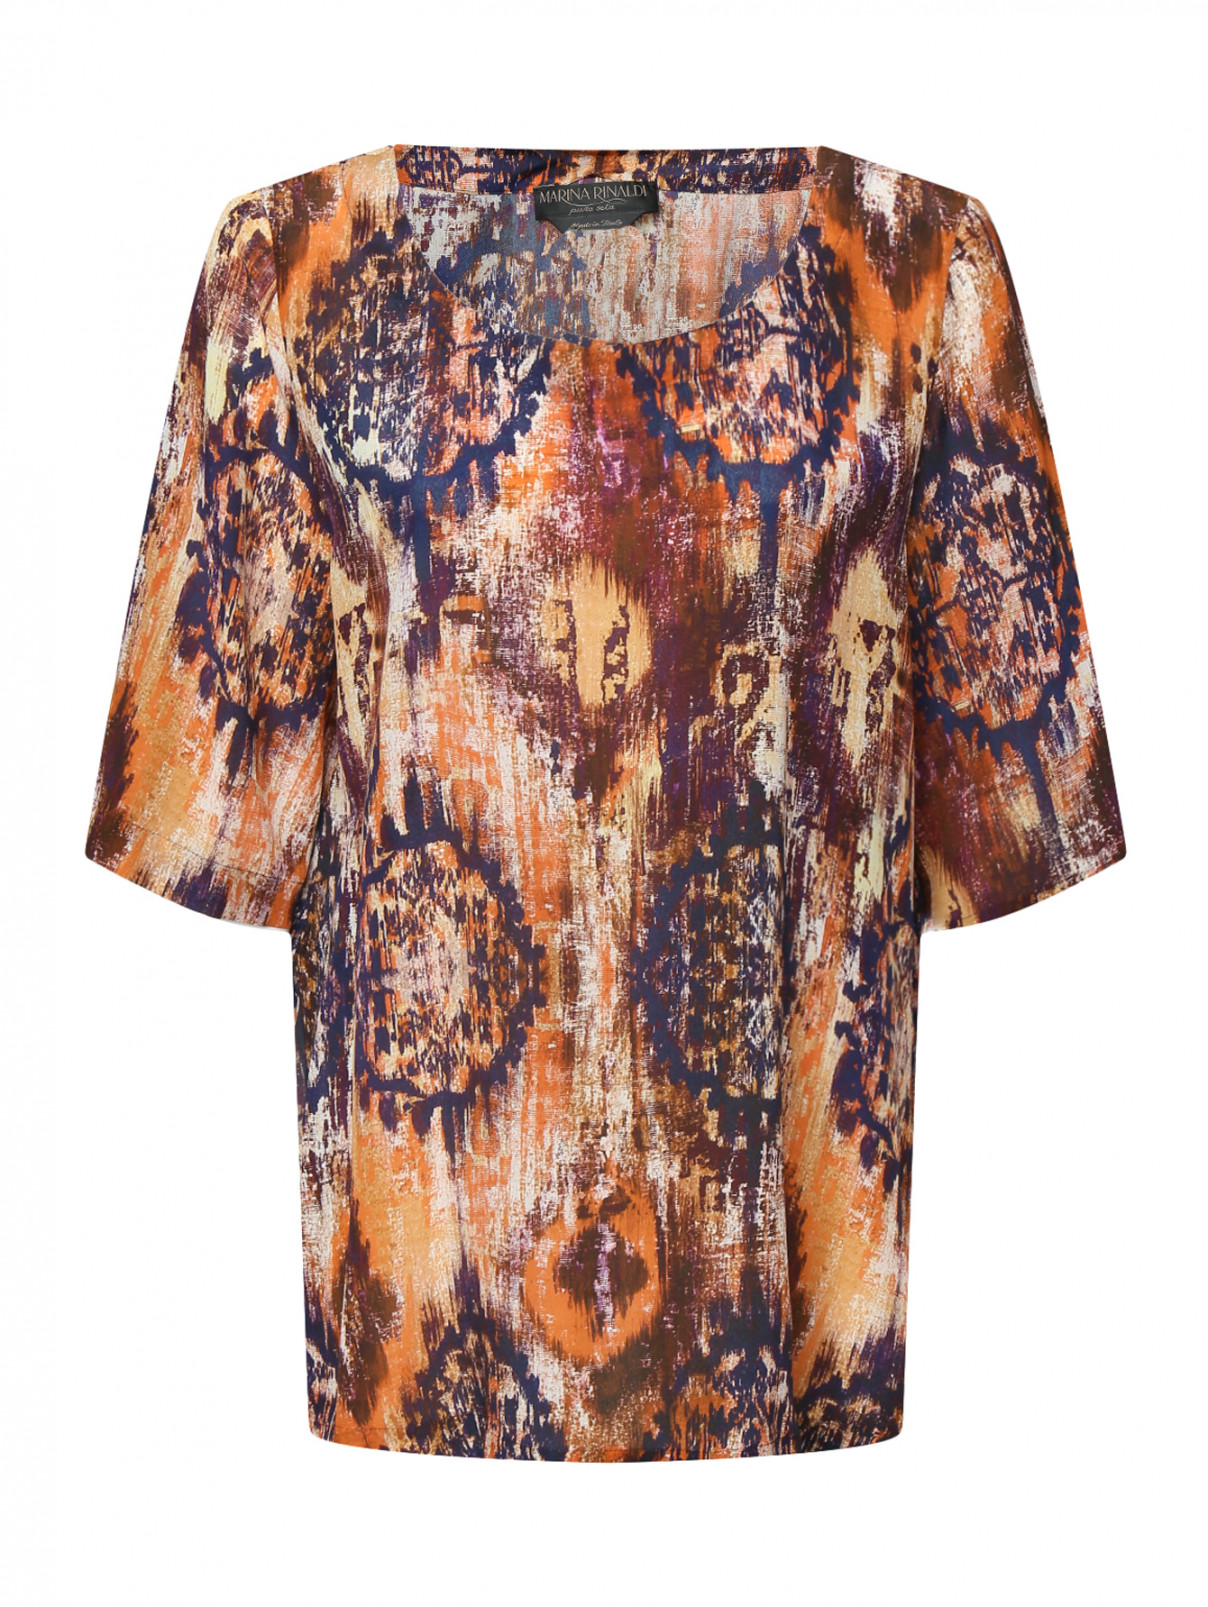 Блуза из шелка с коротким рукавом Marina Rinaldi  –  Общий вид  – Цвет:  Коричневый